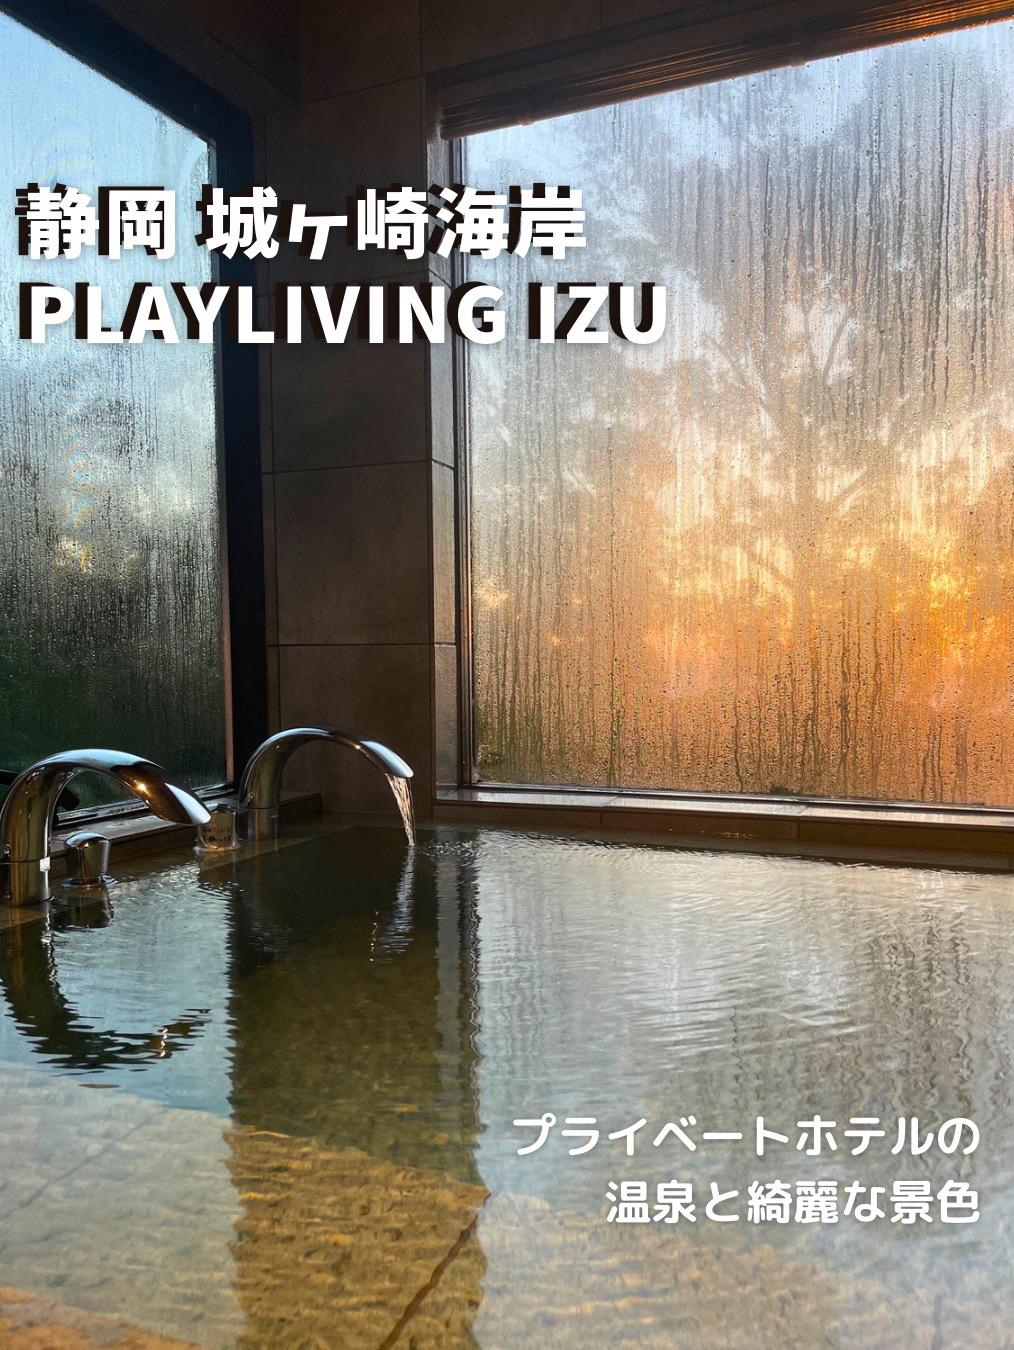 [静冈城崎海岸]推荐温泉和美丽的风景♨️ Playliving IZU